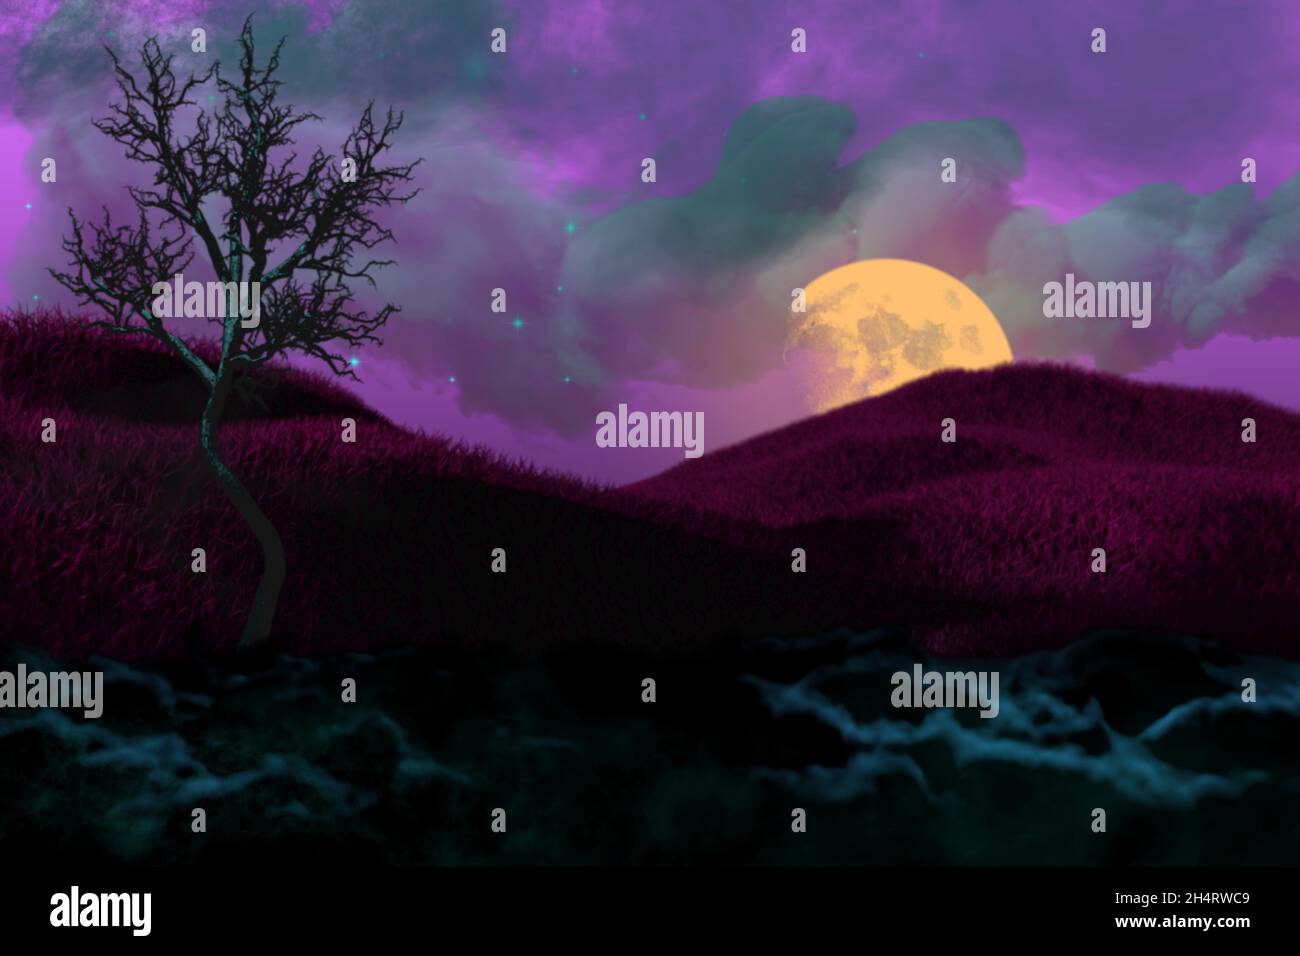 Lebendige süße Nacht Hintergrund - selektive Fokus Alptraum Konzept - Unschärfe Hintergrund Design Vorlage 3D-Illustration Stockfoto